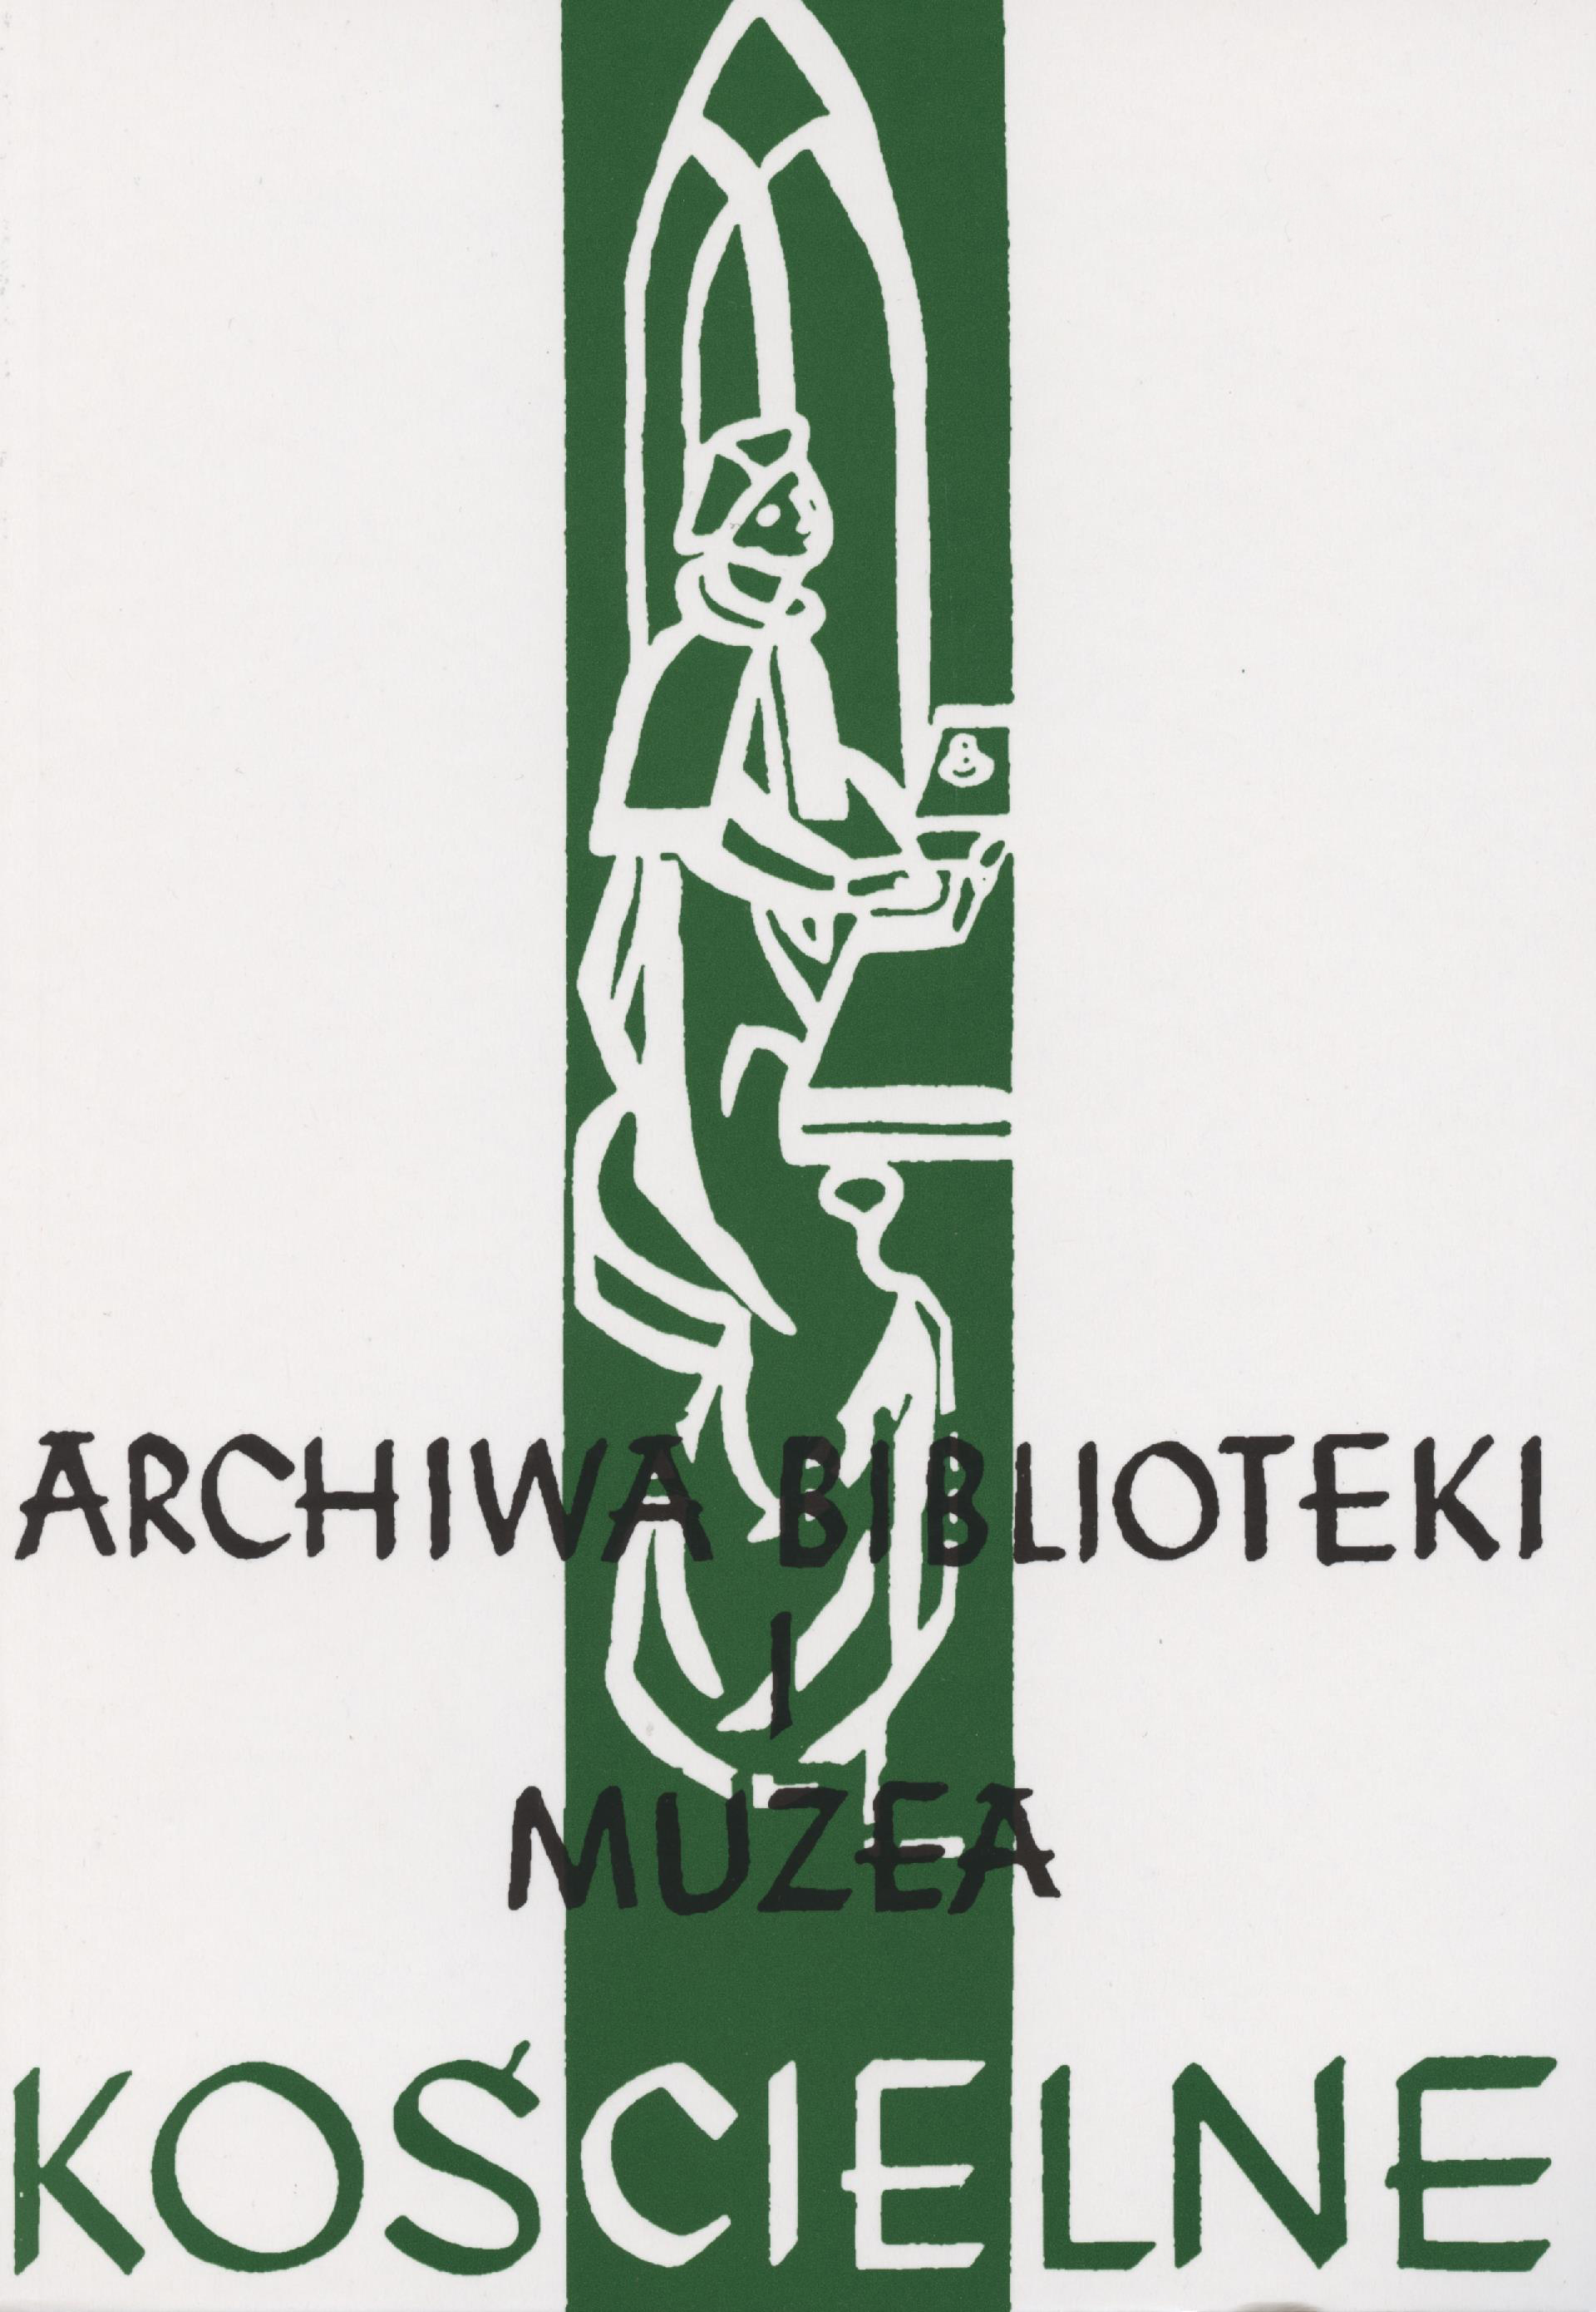 ‘Zeszyty Naukowe Katolickiego Uniwersytetu Lubelskiego’ as a university journal Cover Image